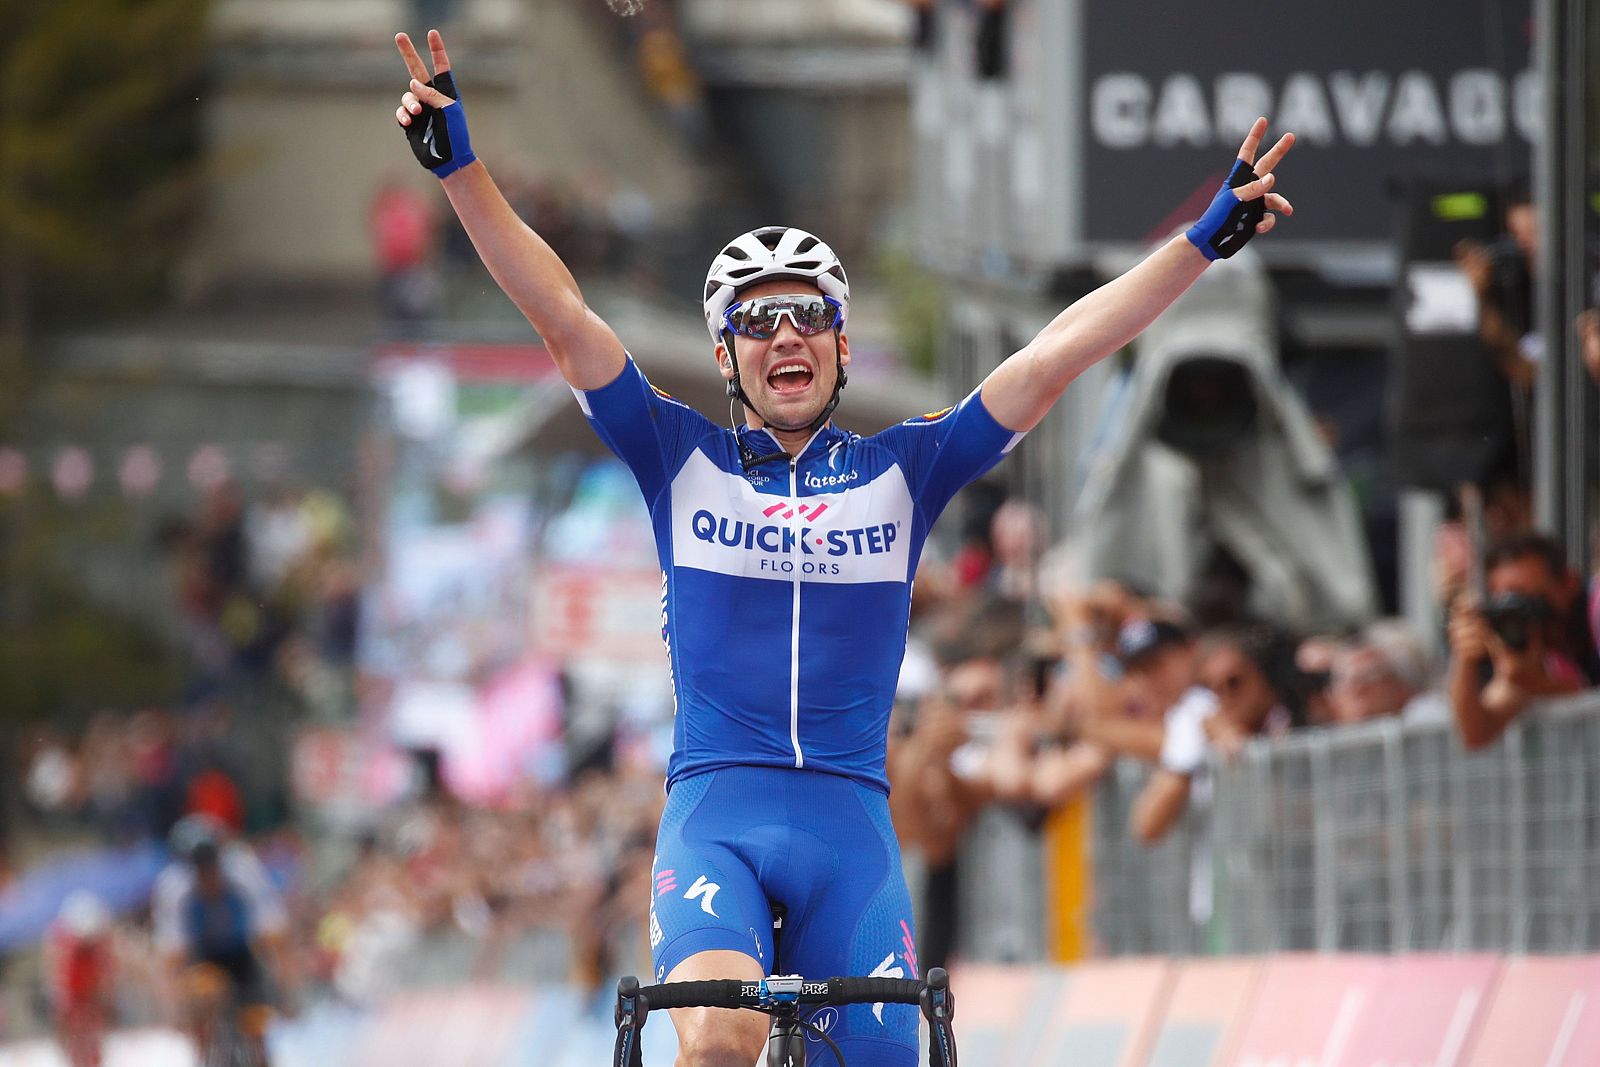 El alemán Maximilian Schachmann (Quick-Step) celebra su victoria en la etapa 18 del Giro 2018.